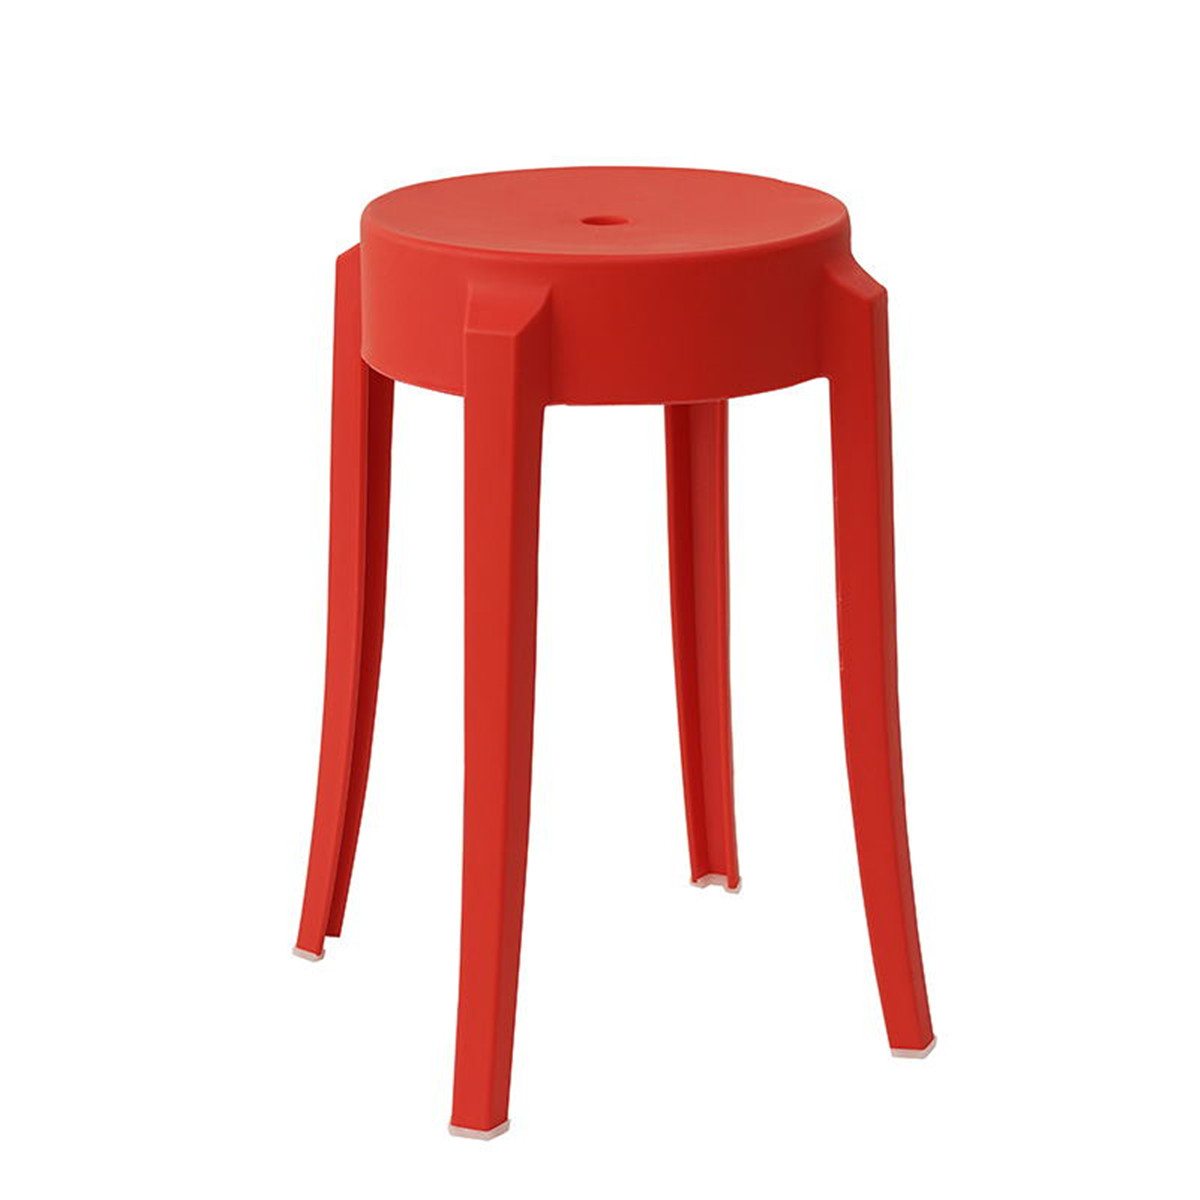 圆形家用塑料凳子加厚成人高凳时尚餐桌凳简易圆凳小椅子